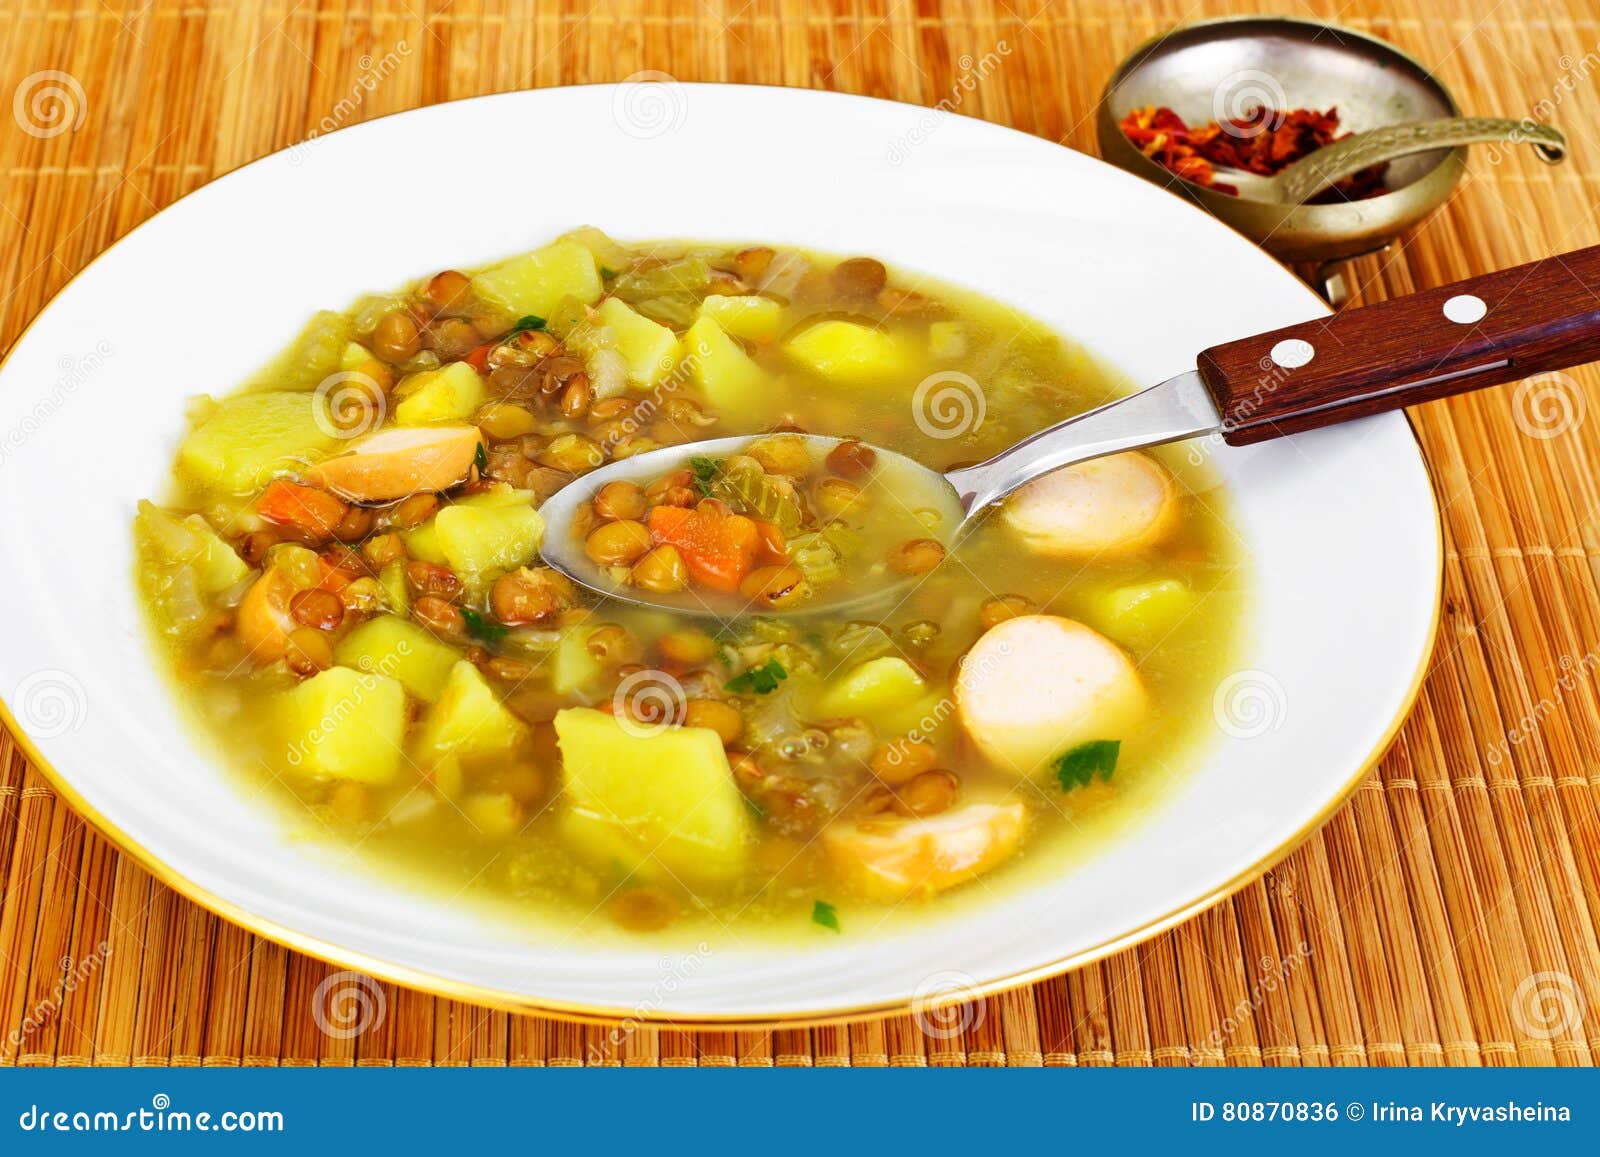 选拔红色汤碗充满荷兰汤 库存照片. 图片 包括有 荷兰语, 调味料, 红萝卜, 烹调, 餐馆, 可食, 温暖 - 37908876